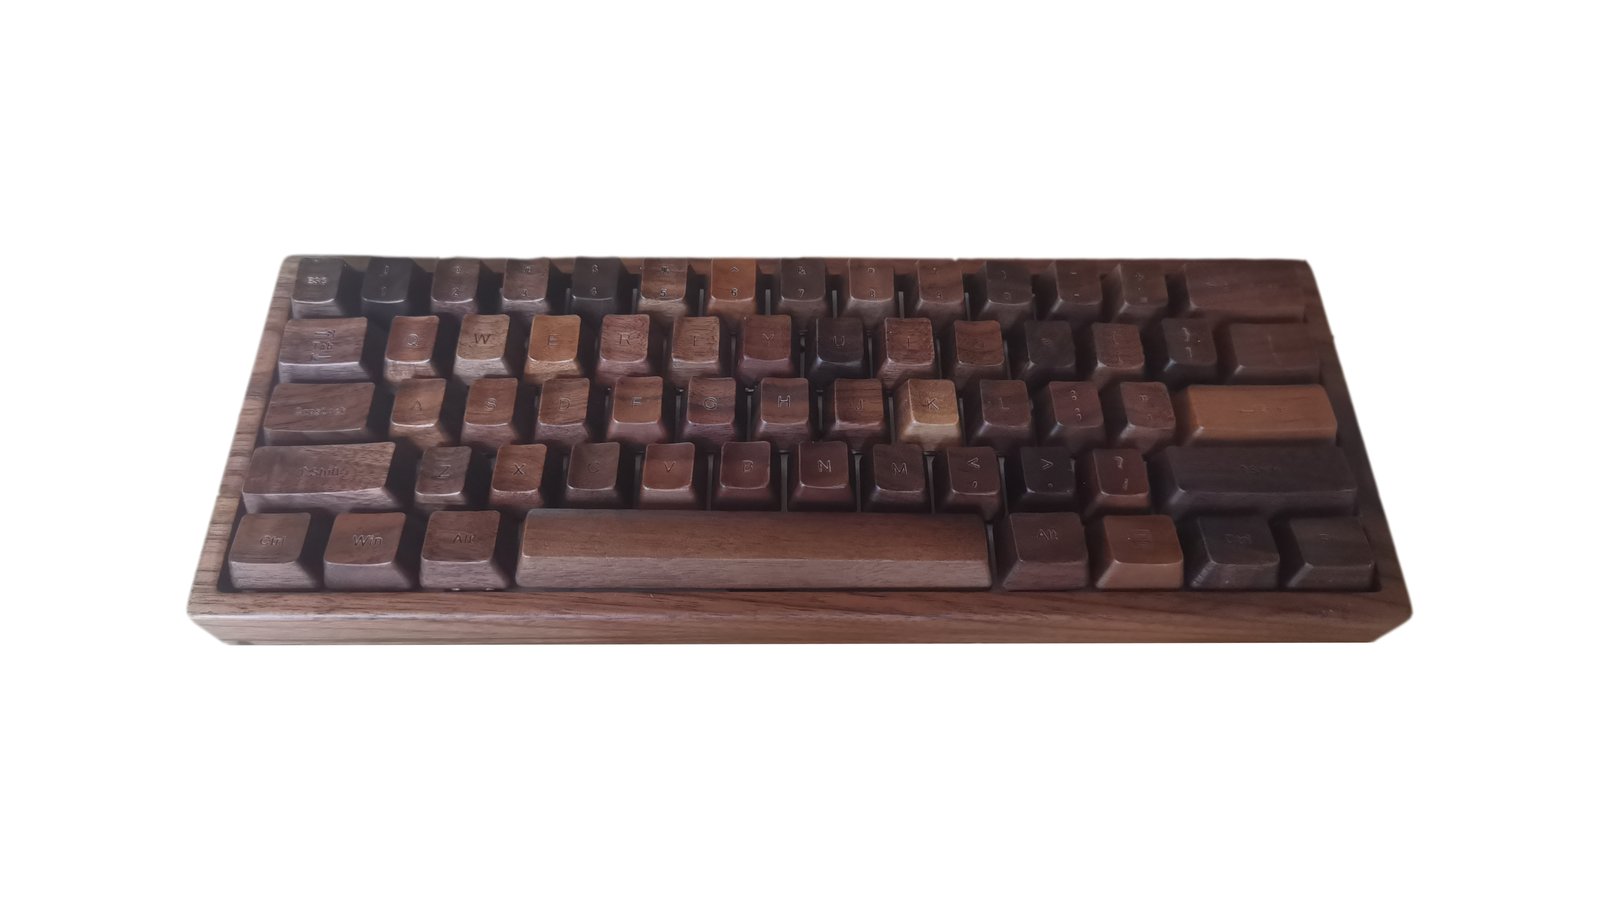 Carpenter Tau Keyboard